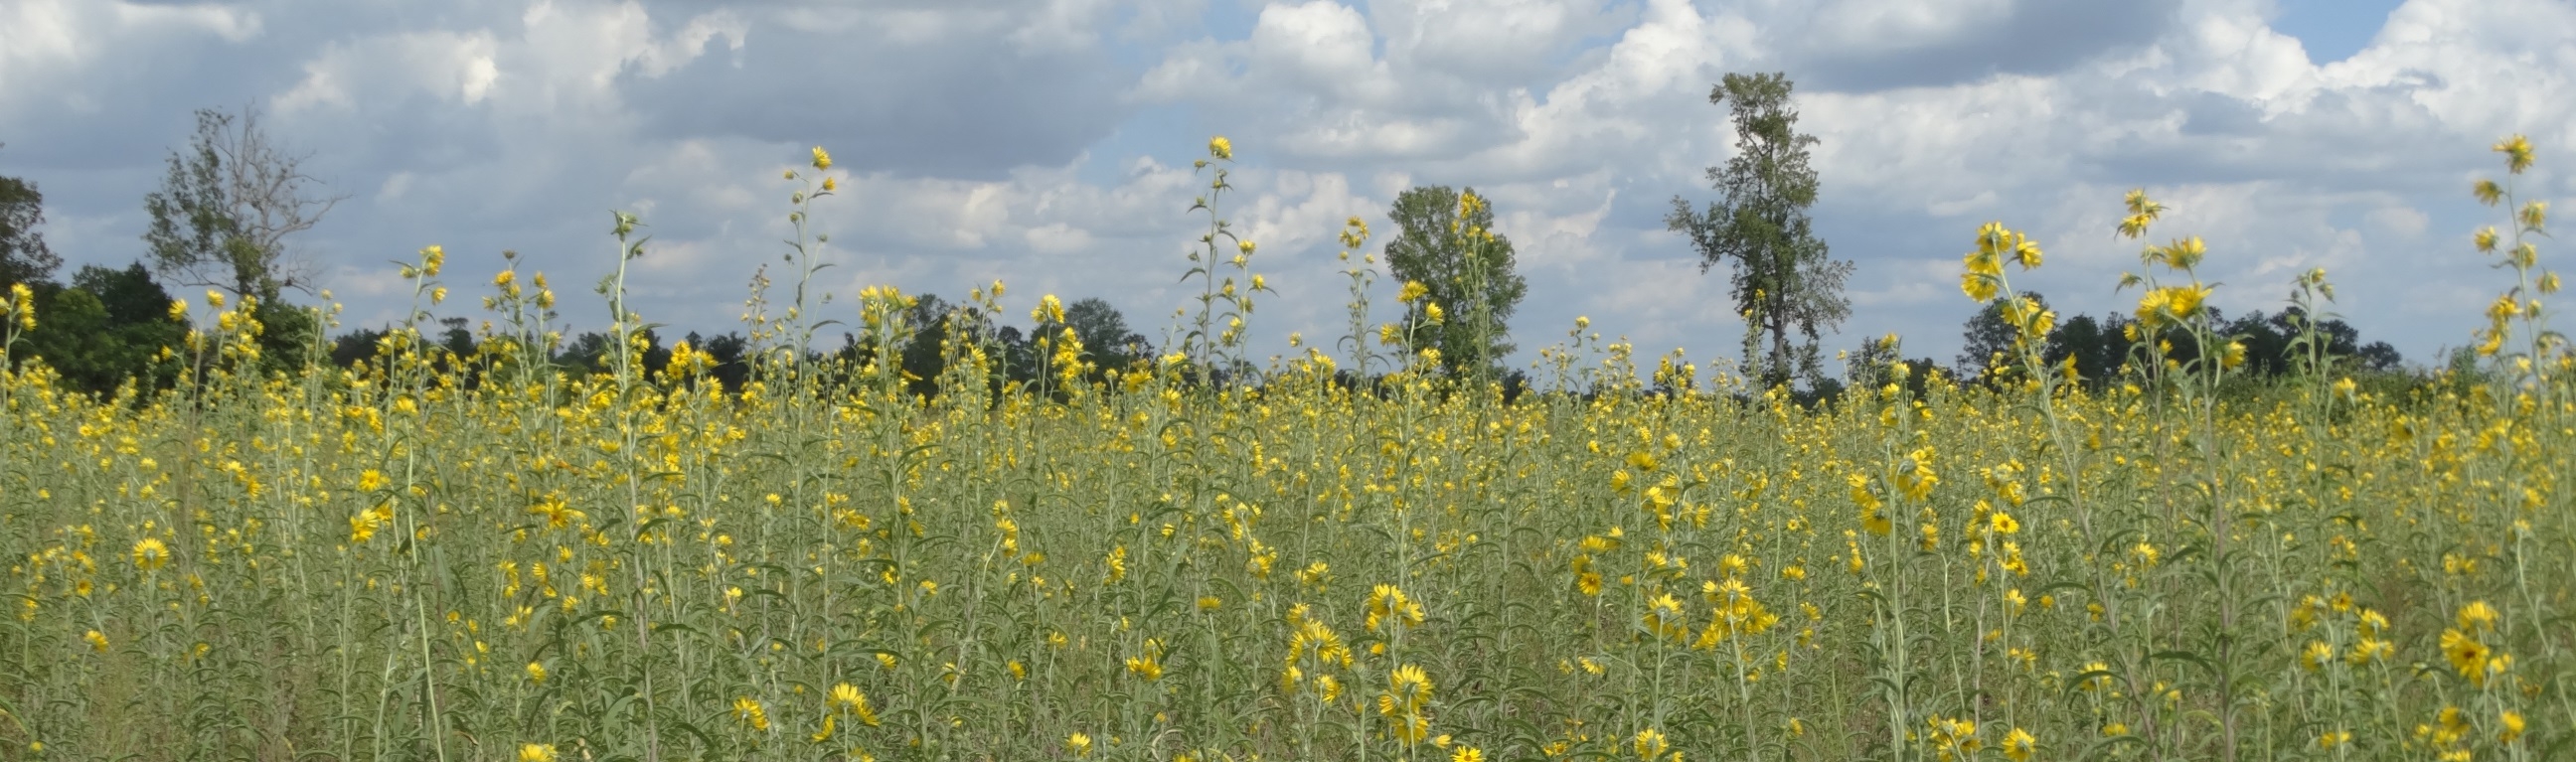 Sunflowers in a field buffer